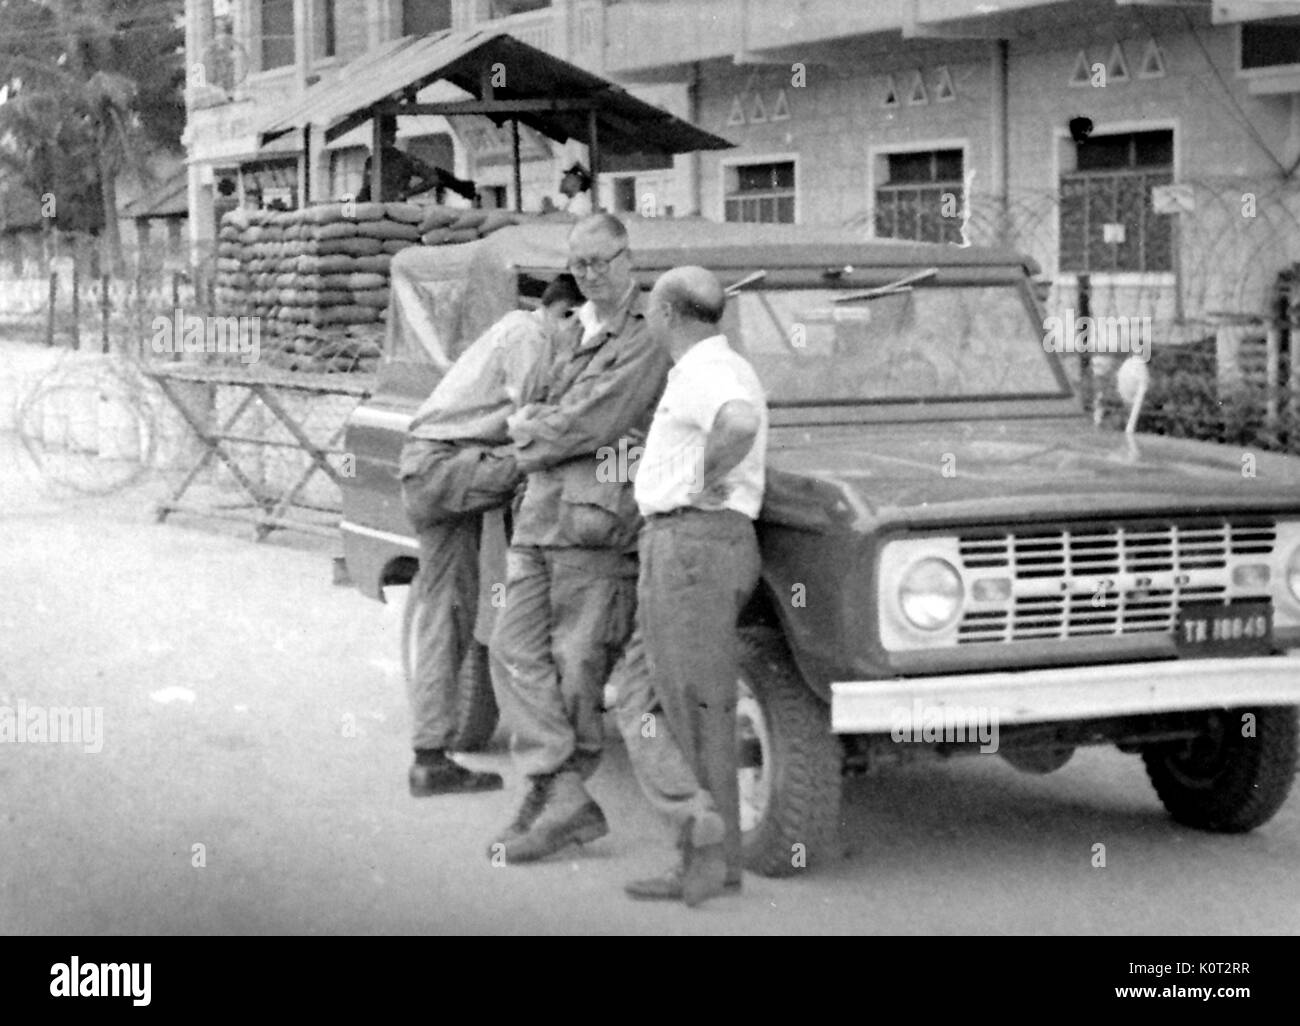 Soldati americani in piedi in un militare di check point durante la Guerra del Vietnam, poggiando su una Ford Truck, soldati con sacchi di sabbia e filo spinato a una mitragliatrice post visibili in background, 1966. Foto Stock